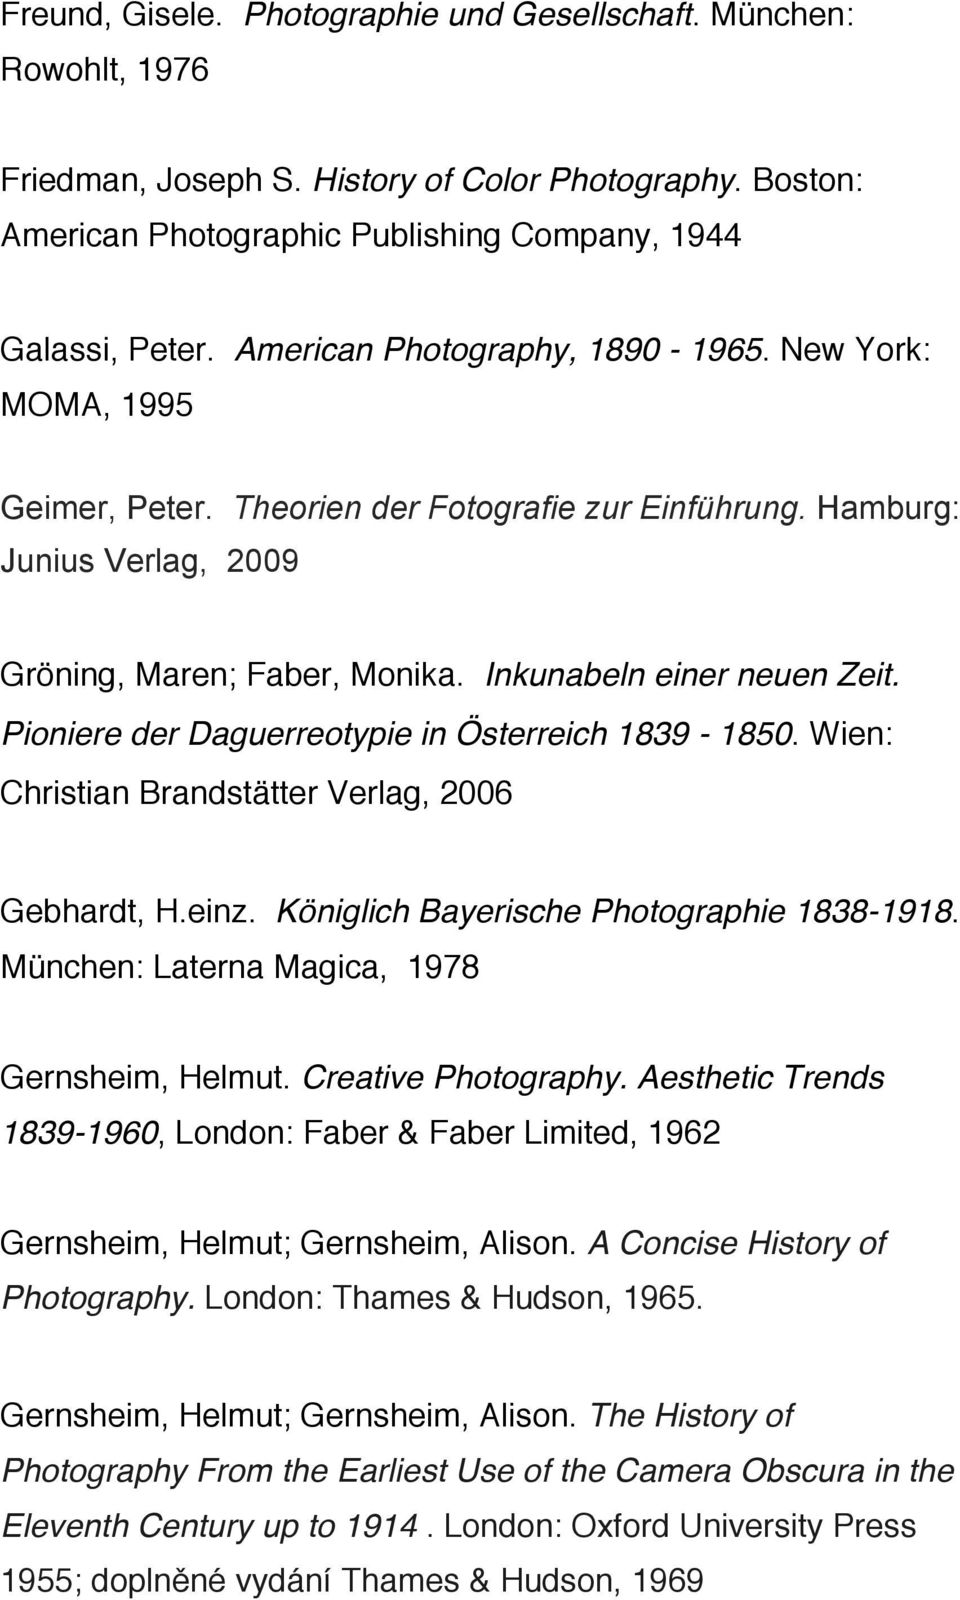 Pioniere der Daguerreotypie in Österreich 1839-1850. Wien: Christian Brandstätter Verlag, 2006 Gebhardt, H.einz. Königlich Bayerische Photographie 1838-1918.